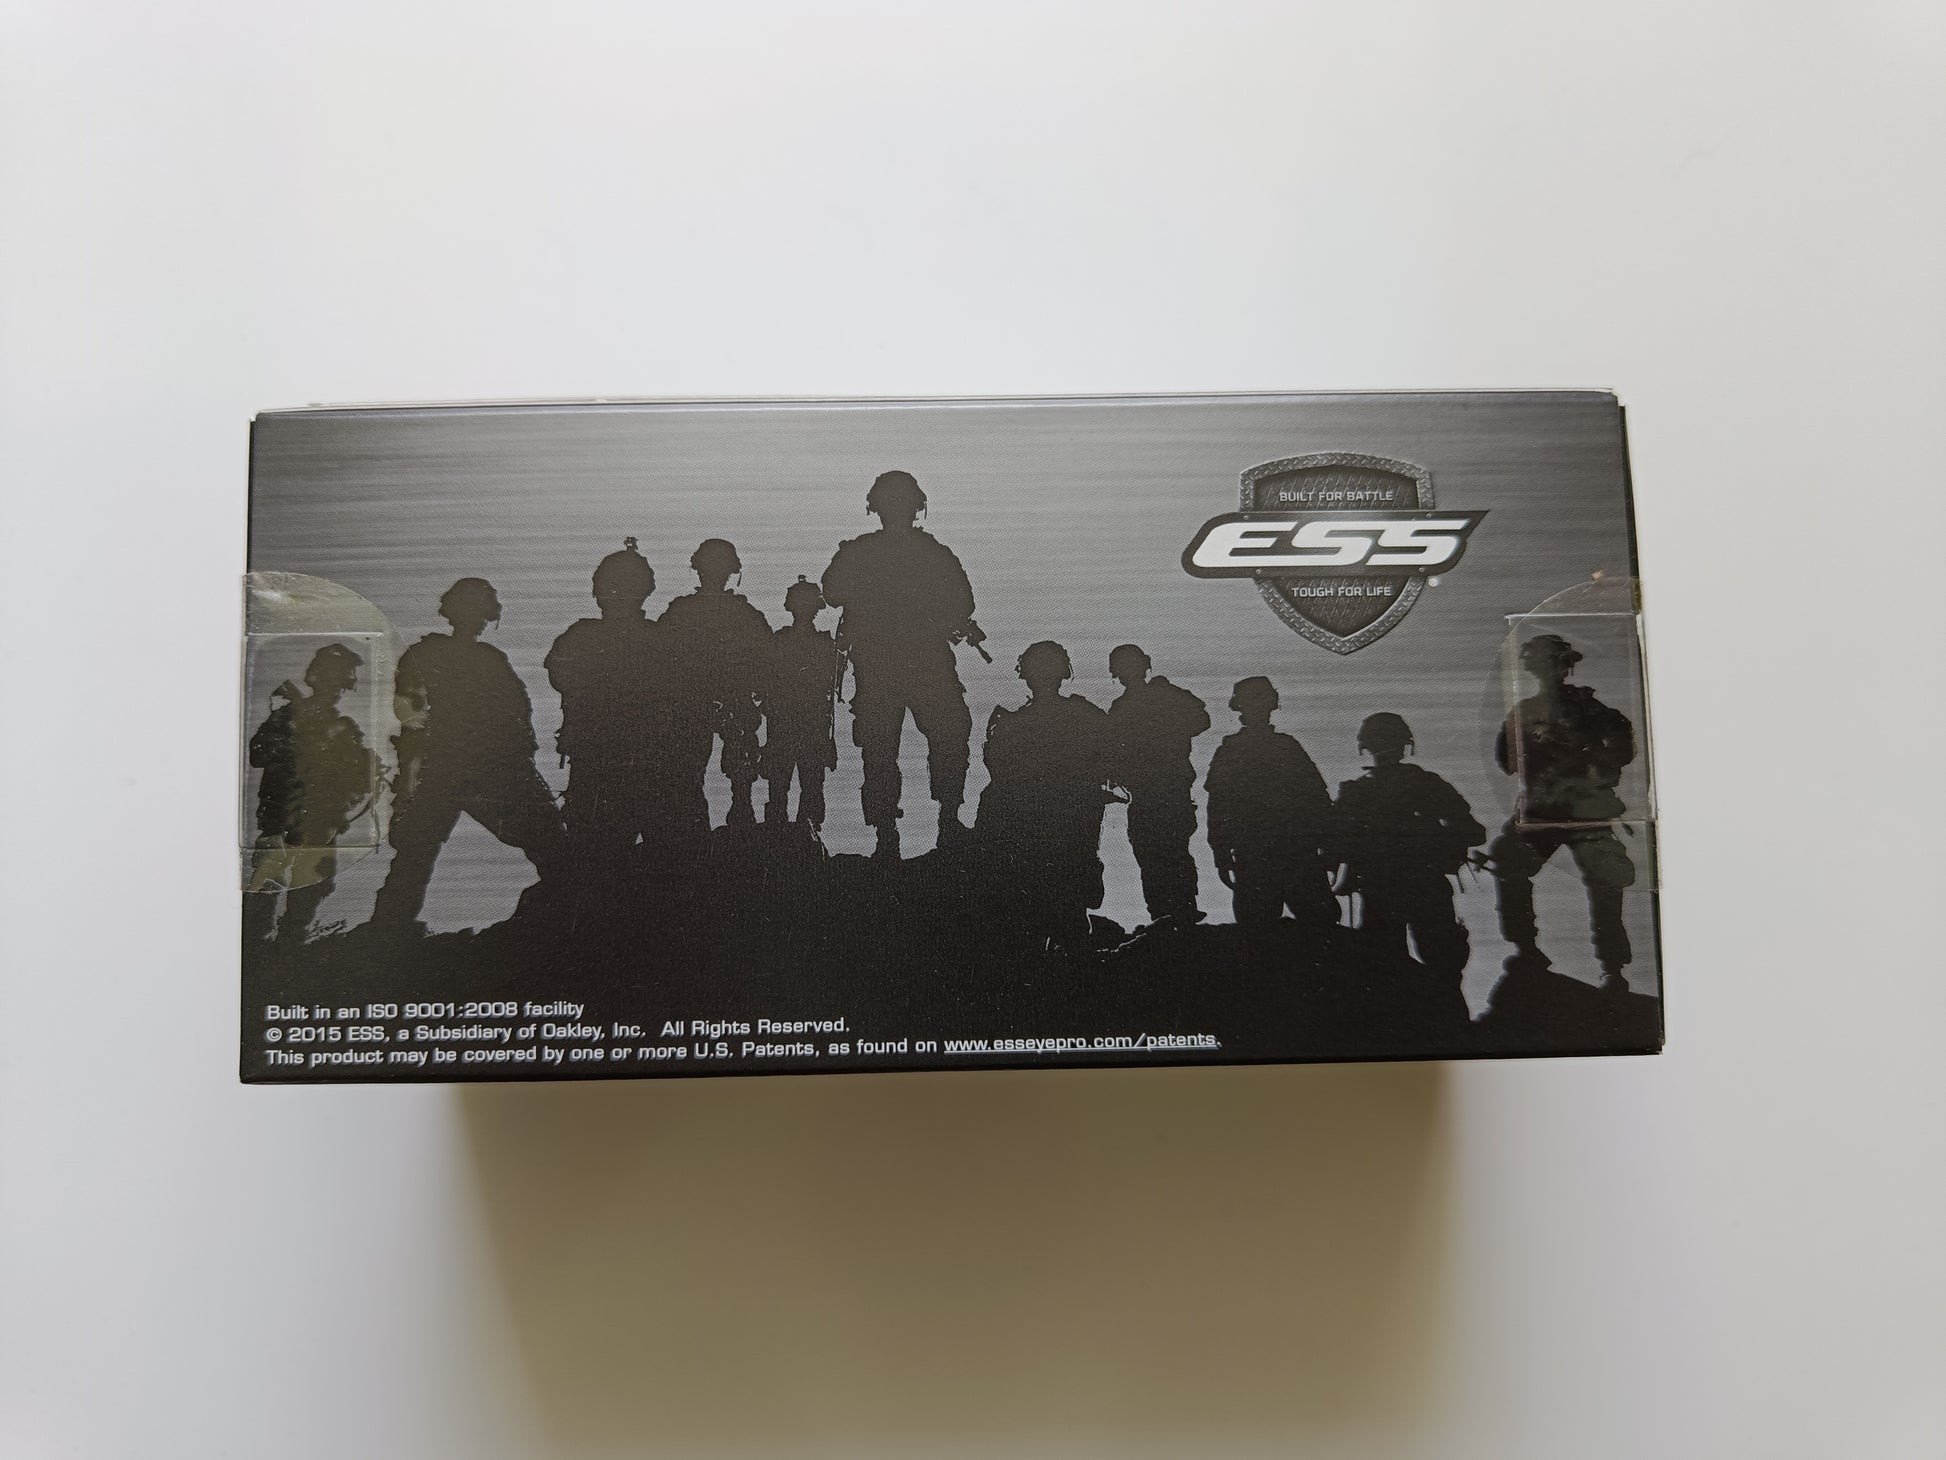 Krabice slunečních brýlí ESS Crossbow suppressor - strana s obrázkem s vojenským motivem